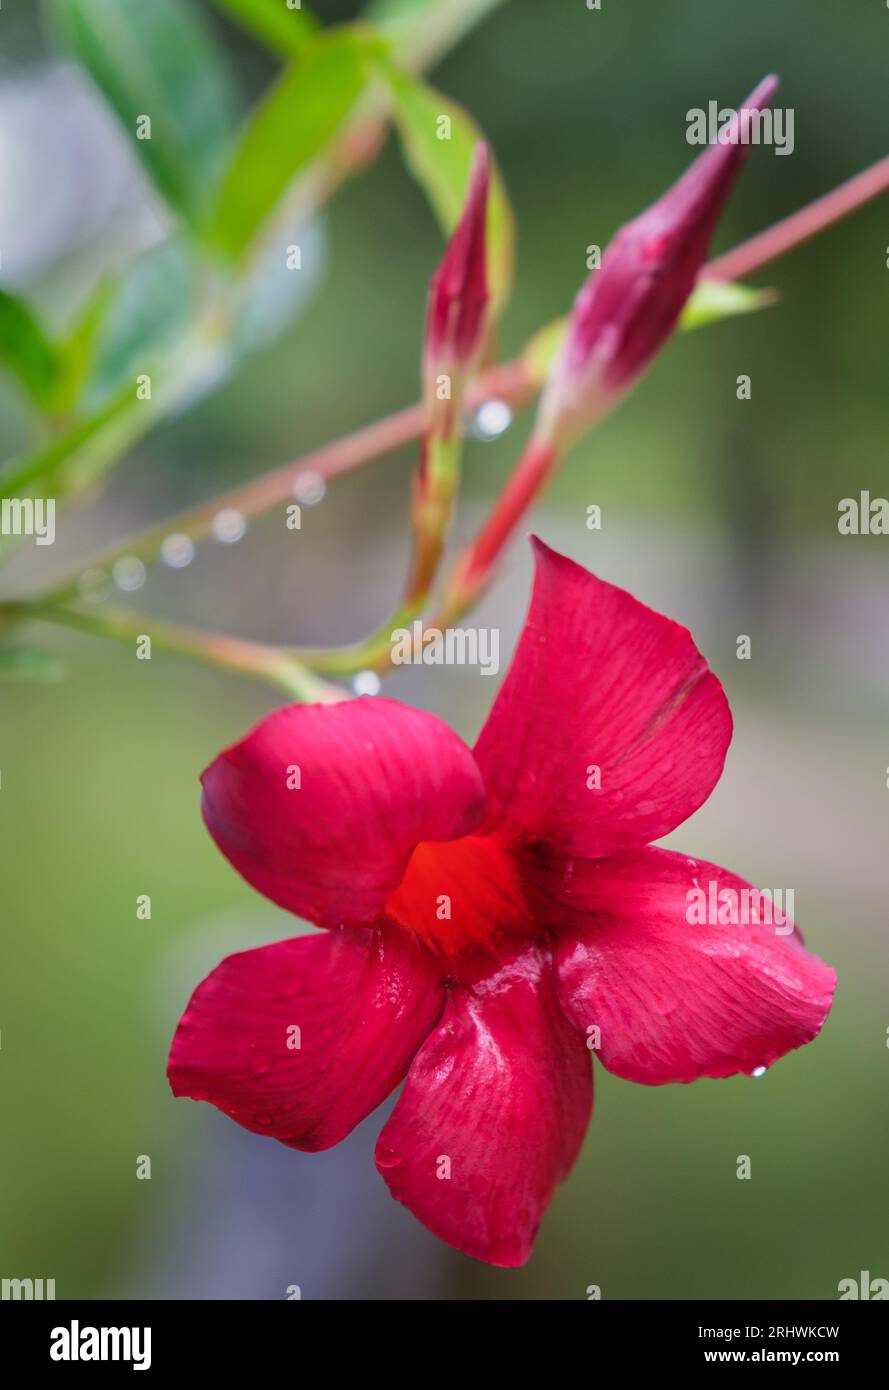 Brasilianischer Jasmin (Mandevilla sanderi) - Hall County, Georgia. Die Blüte eines roten brasilianischen Jasmins tropft nach einem nächtlichen Regen. Stockfoto